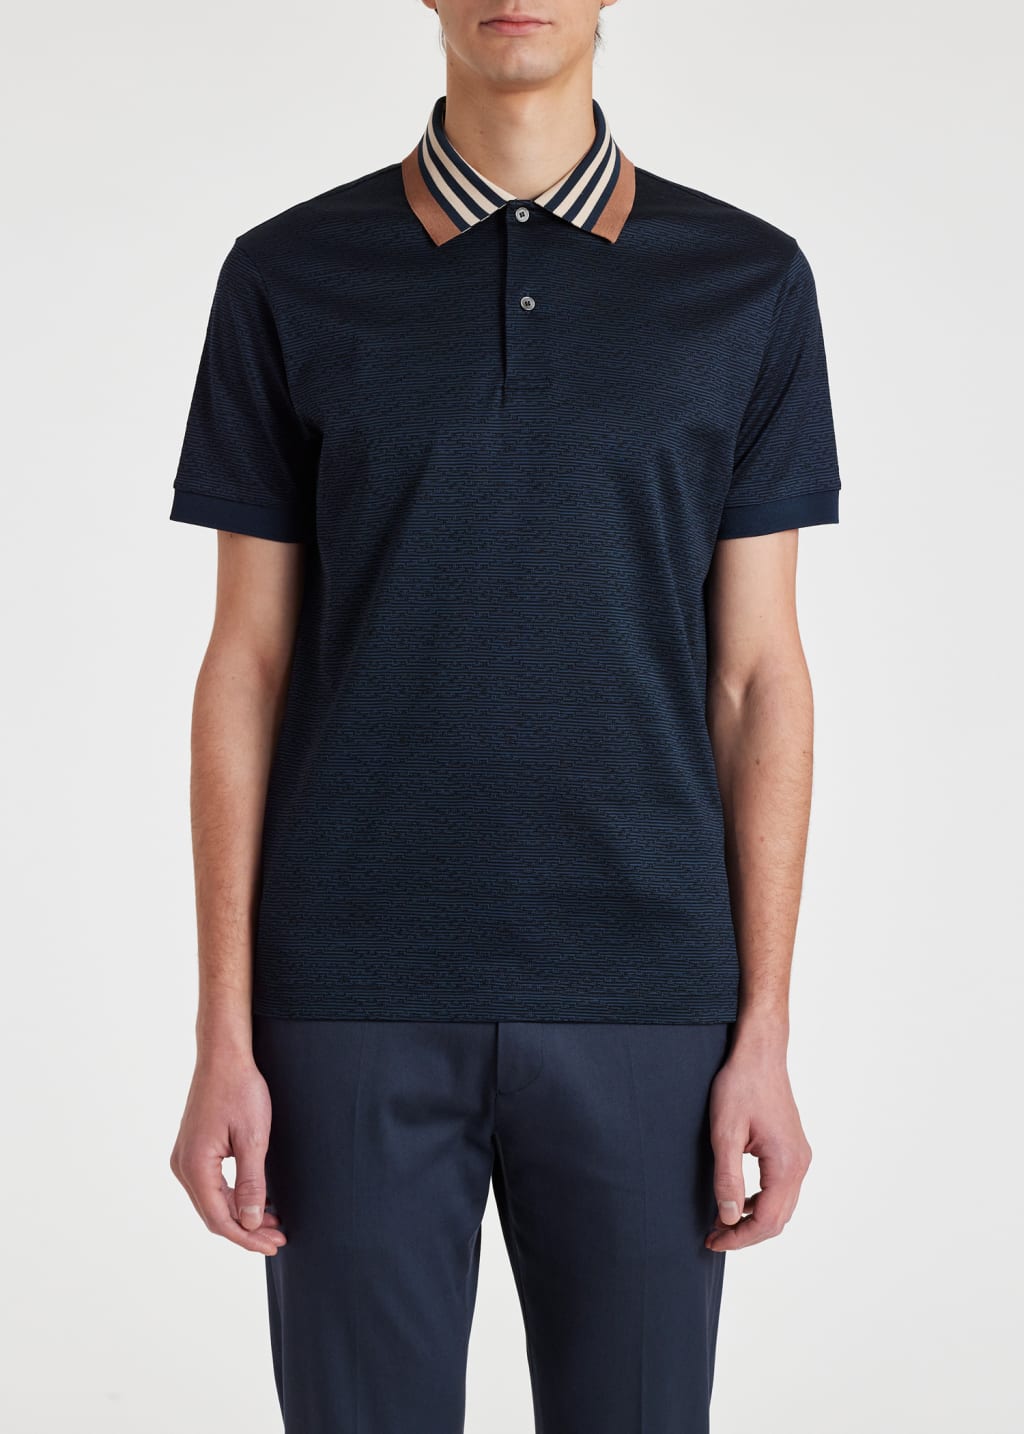 Men's Navy Contrast Collar Cotton Polo Shirt